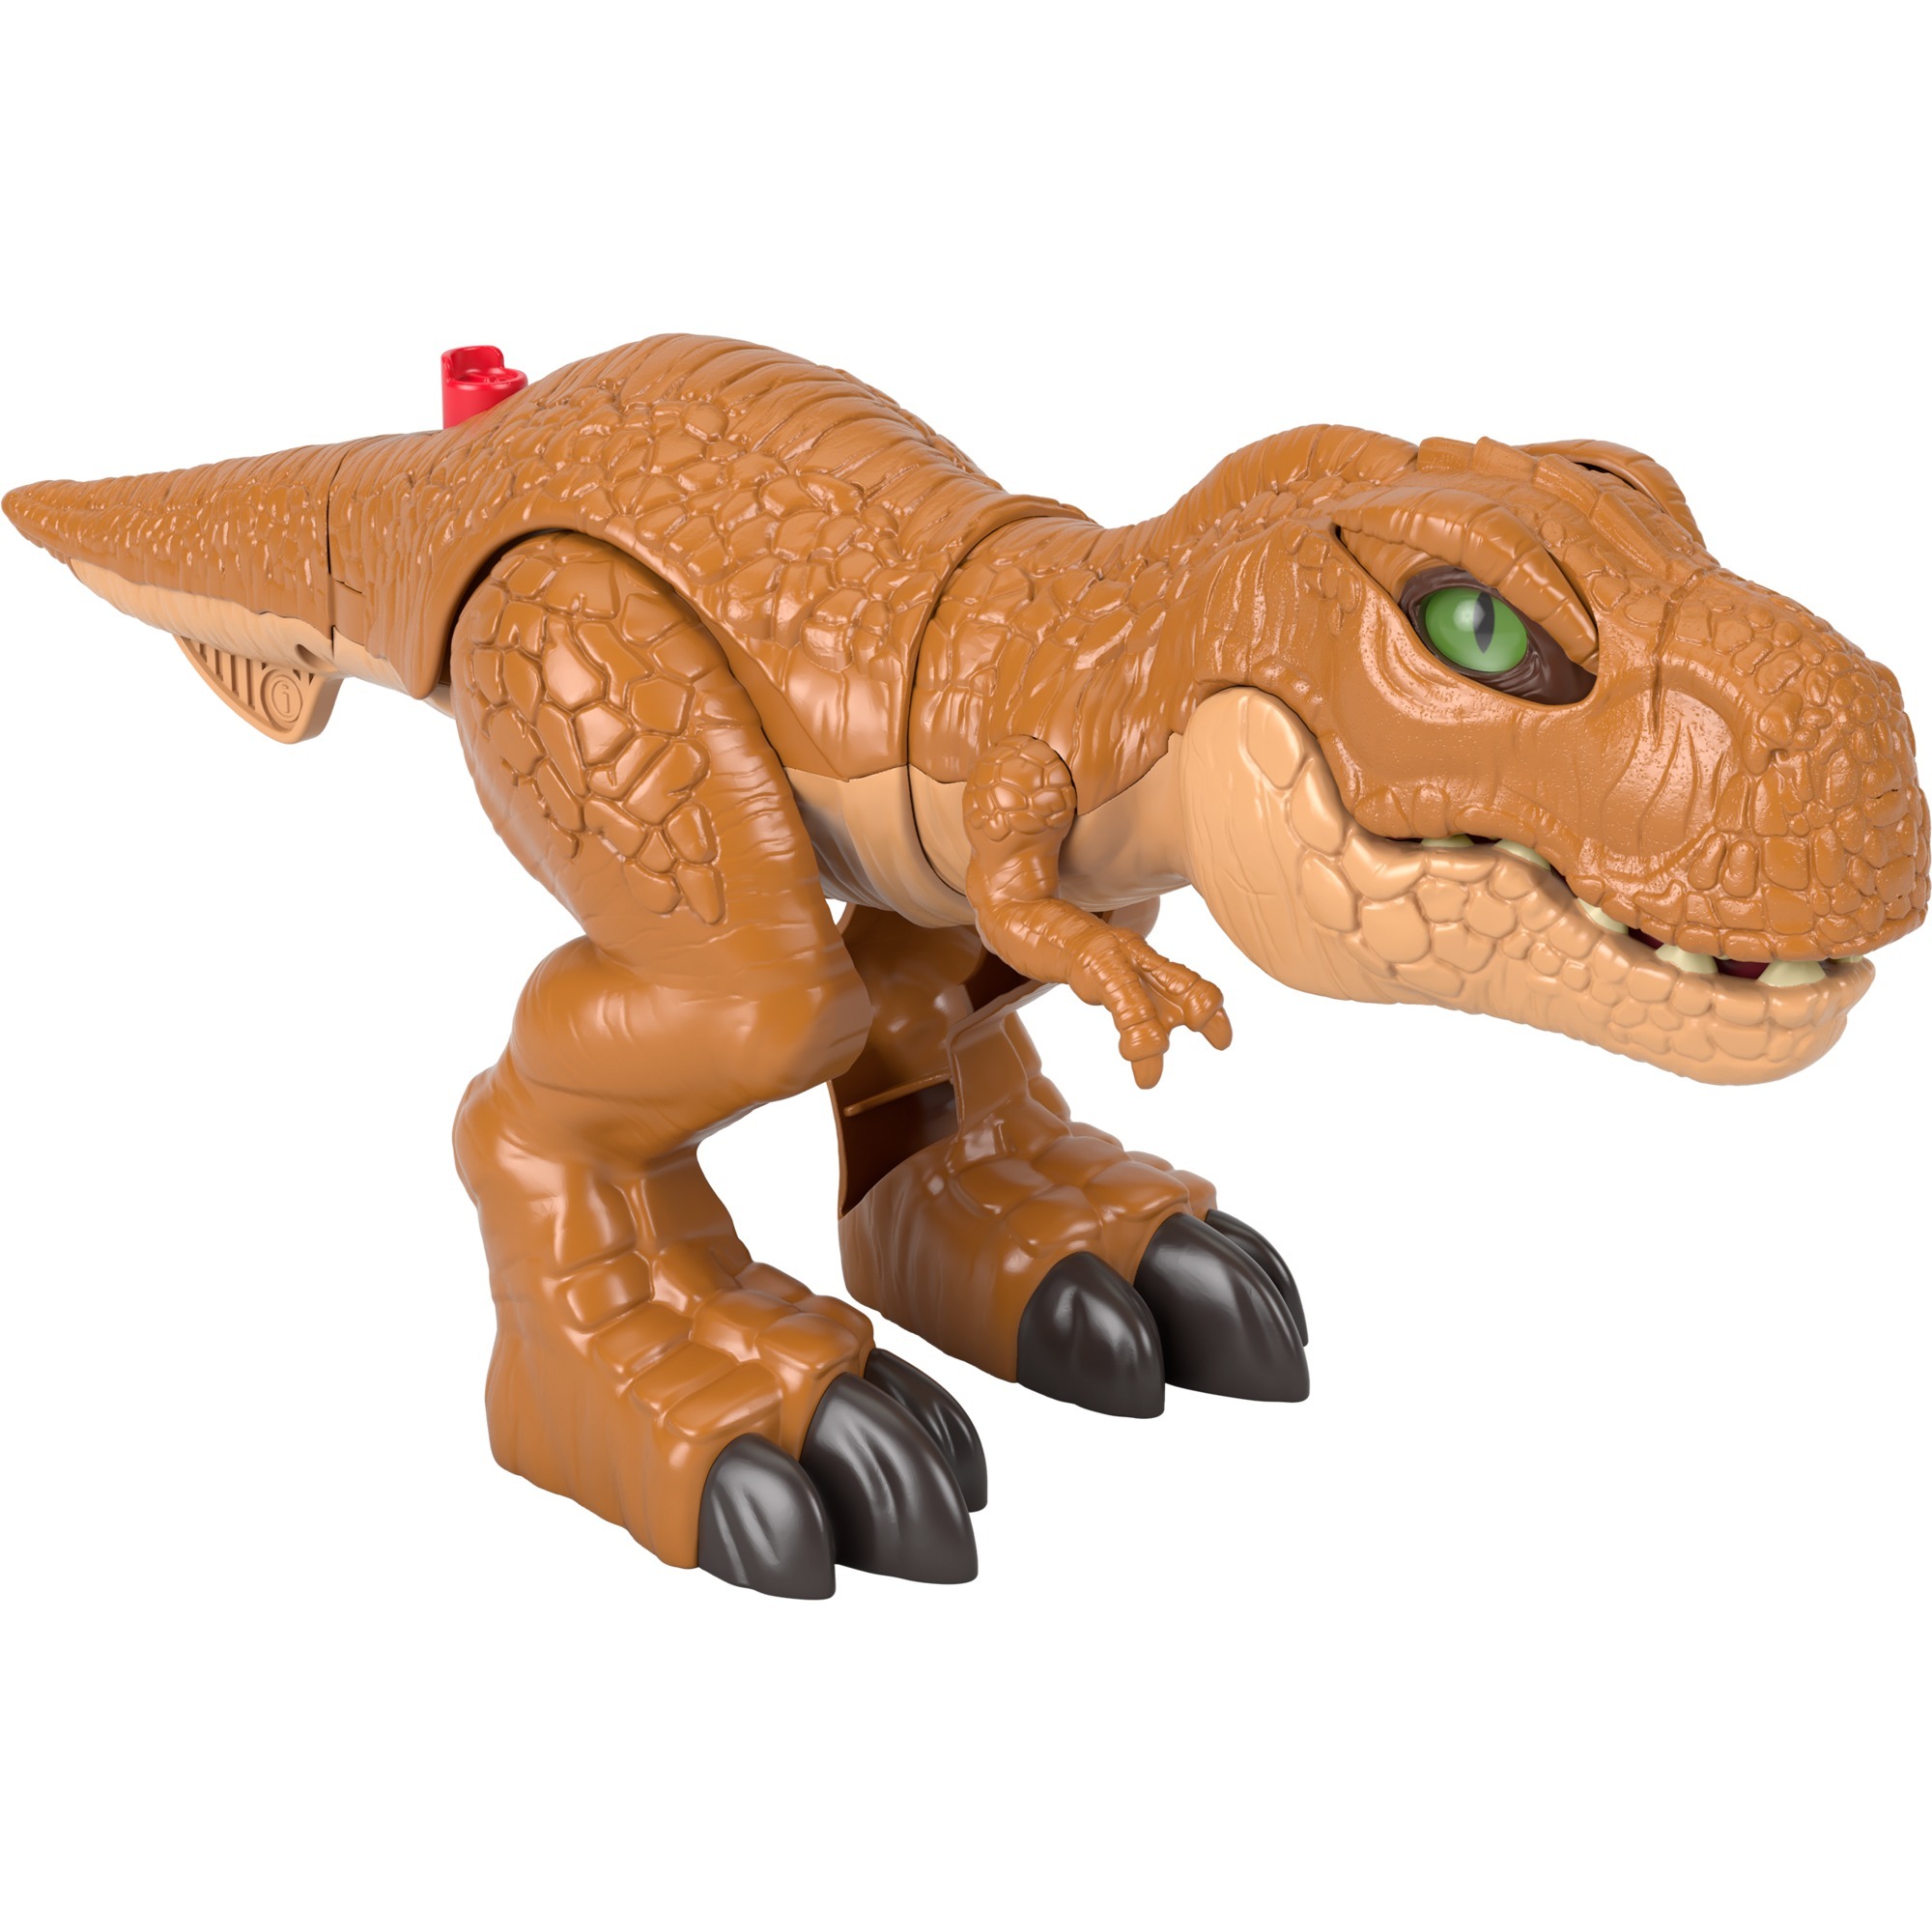 Image of Alternate - Imaginext Jurassic World Wütender Action T-Rex, Spielfigur online einkaufen bei Alternate